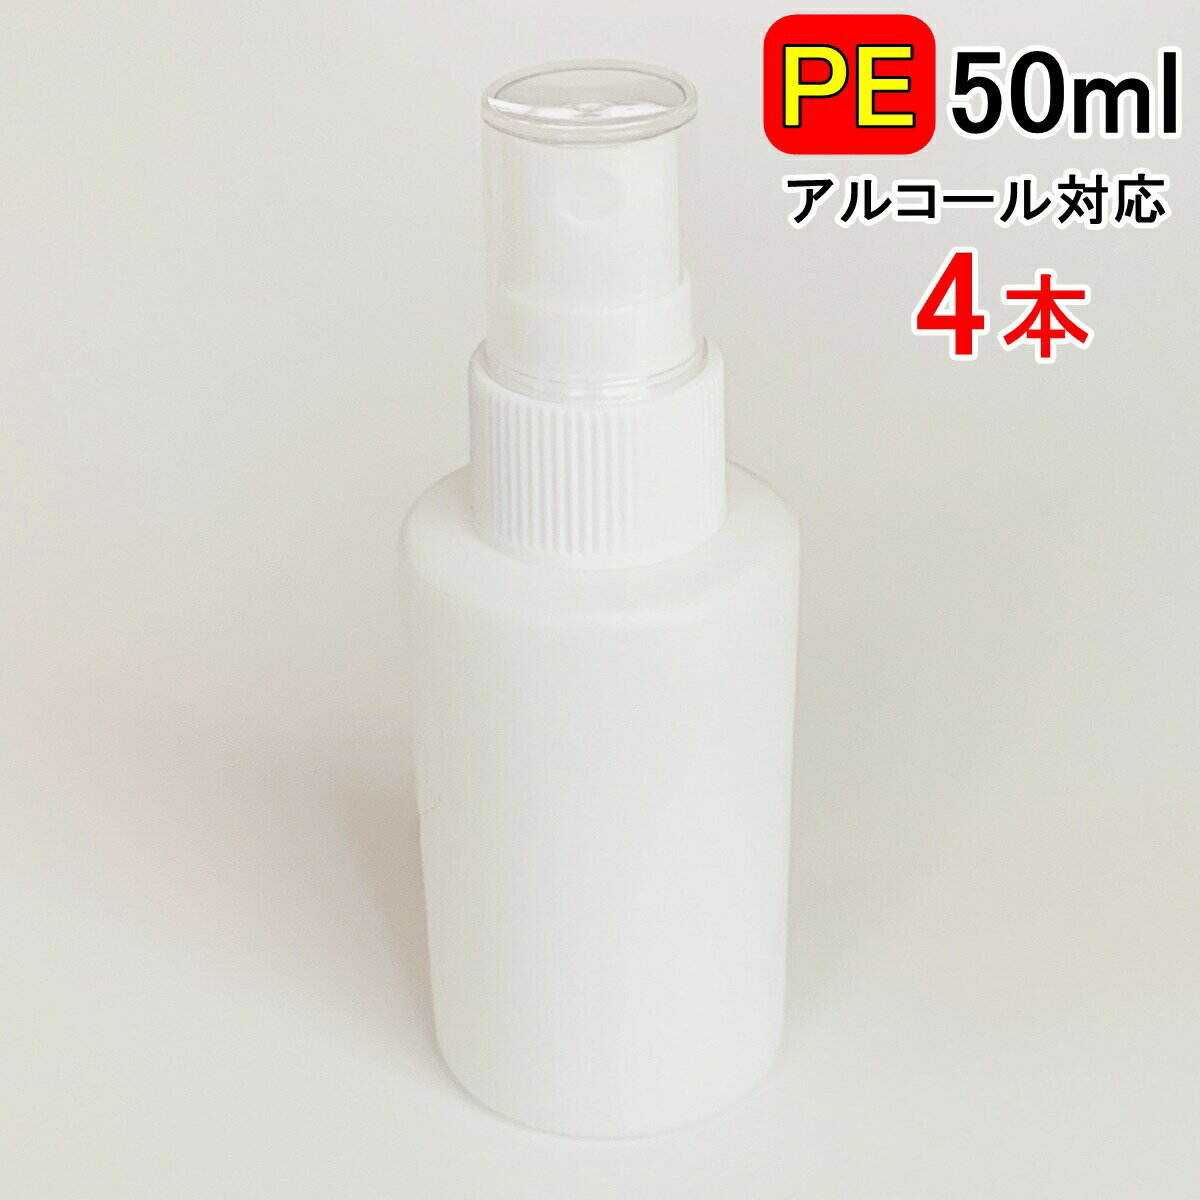 PEスプレーボトル 4本セット 50ml アルコール対応 次亜塩素酸水対応 PEポリエチレン素材 ホワイト プッシュ式 小分け…